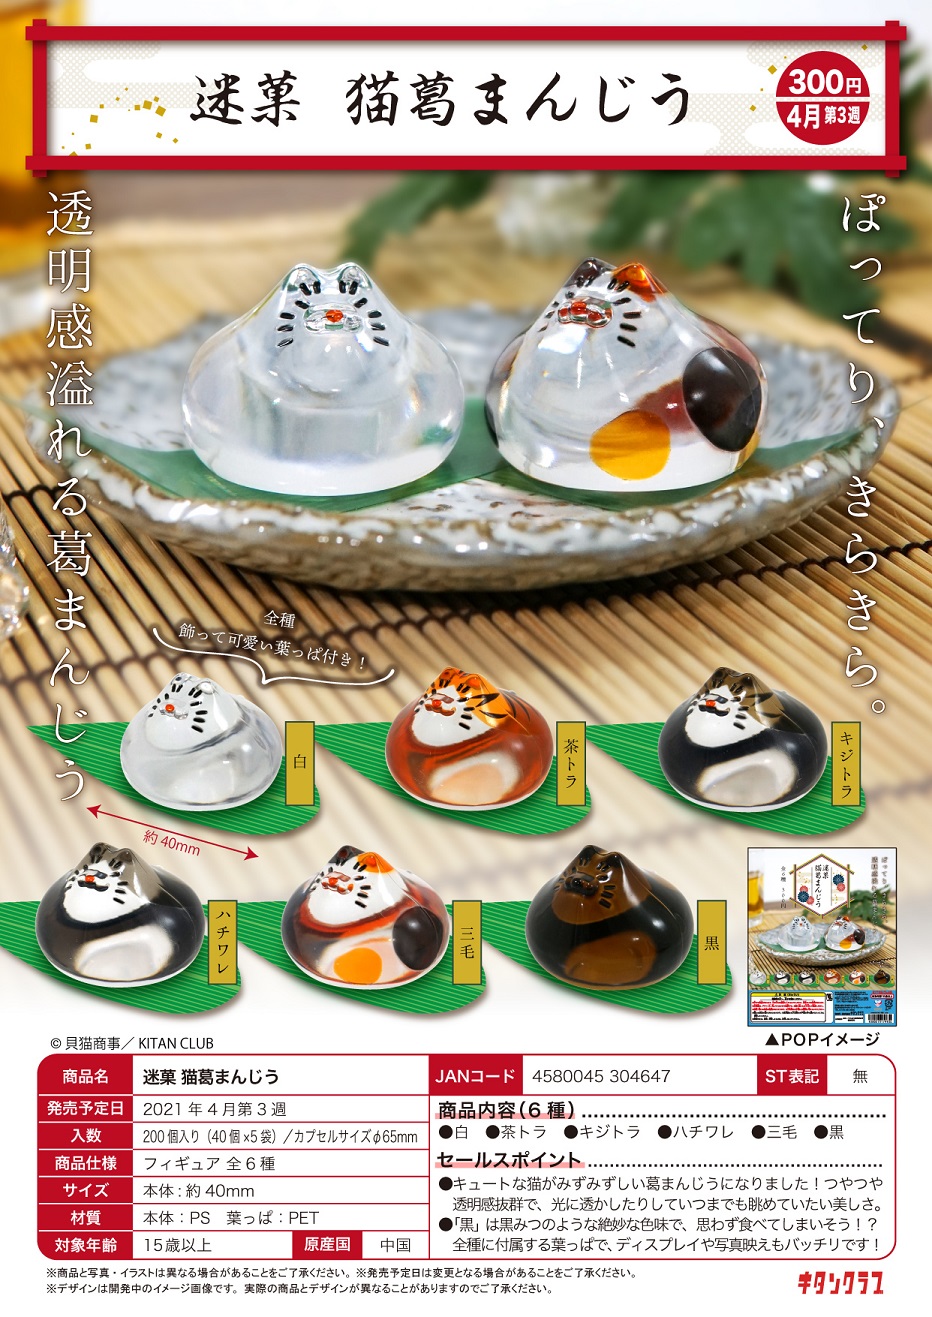 【B】300日元扭蛋 摆件 迷果 猫咪水馒头 全6种 (1袋40个) 304647